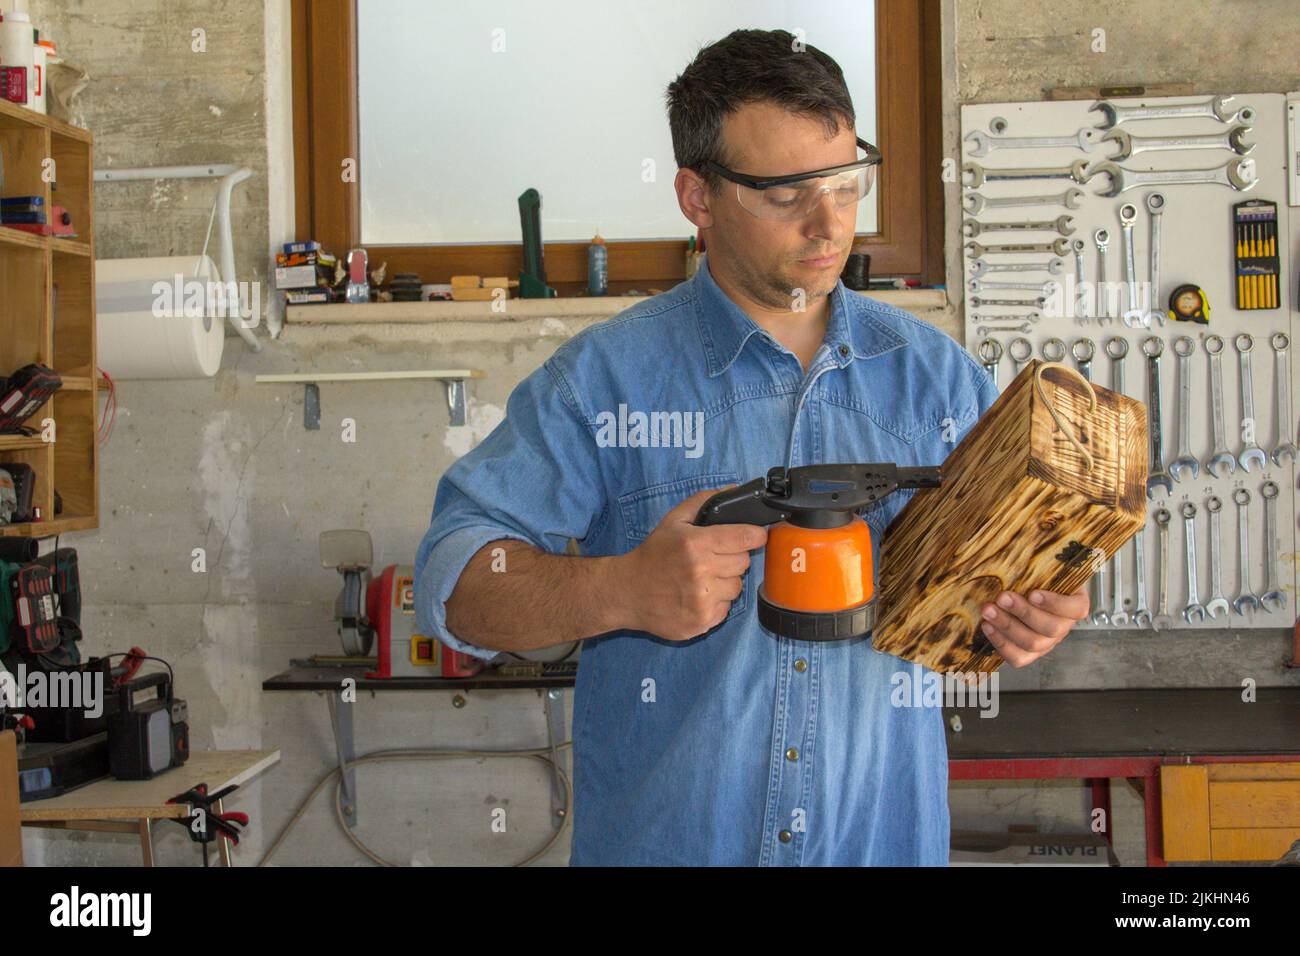 Immagine di un handyman che con una cannella saldatrice brucia e lavora un portabottiglie in legno. Crea il lavoro e lo fai da te Foto Stock